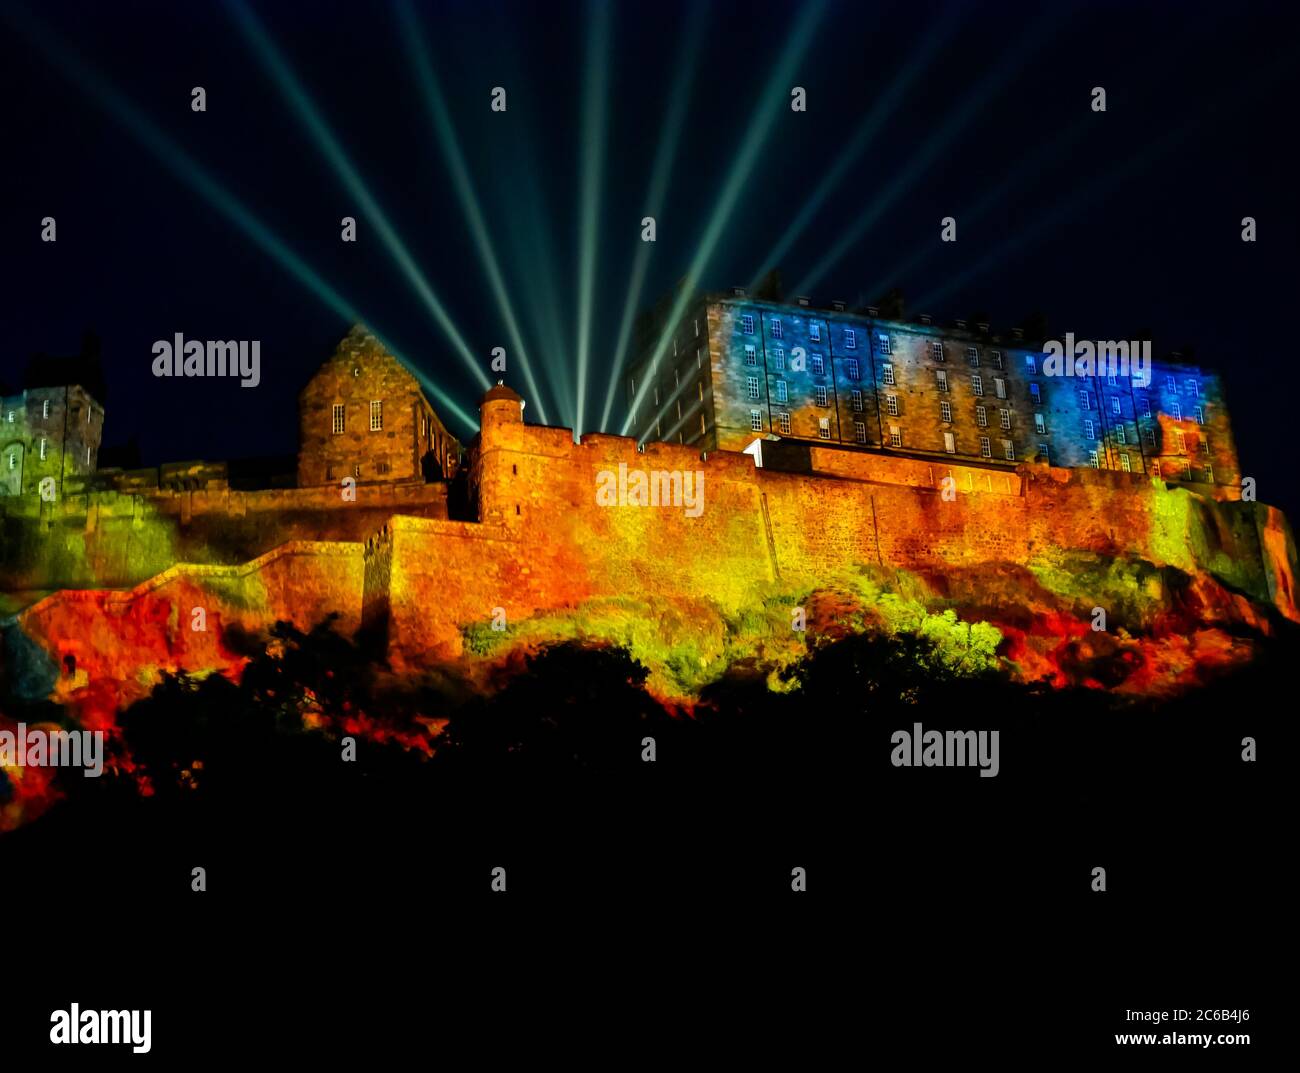 Edinburgh International Festival Standard Life Eröffnungsveranstaltung Lichtprojektion auf Edinburgh Castle, Deep Time in 2106, Schottland, Großbritannien bei Nacht Stockfoto